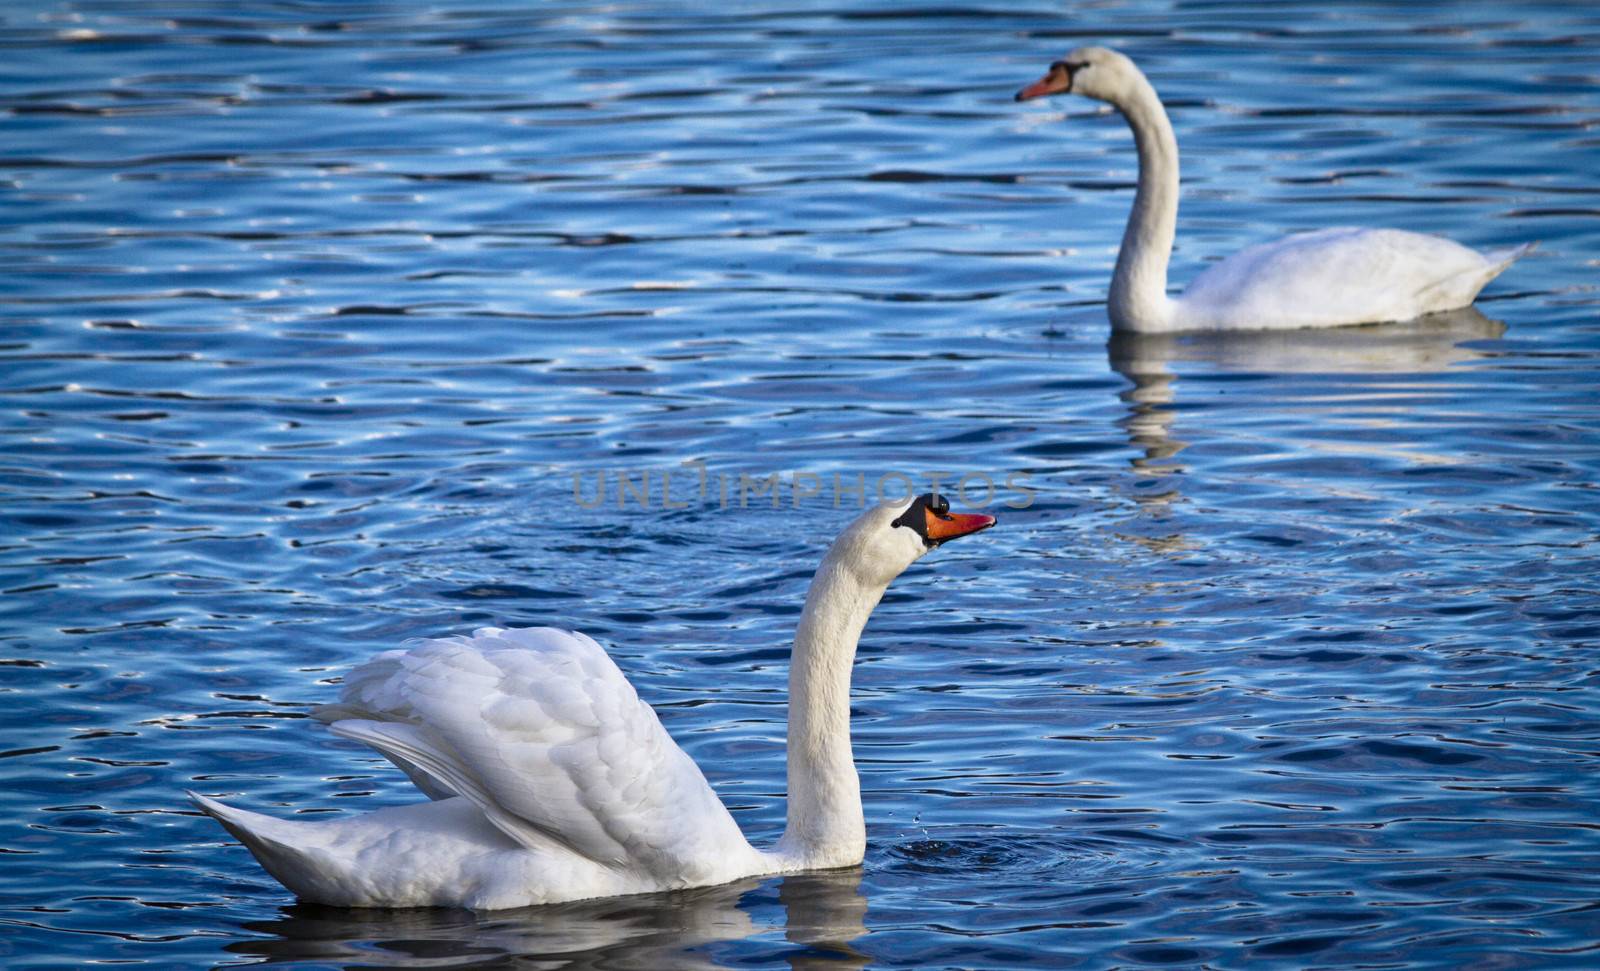 Swan by coburn77